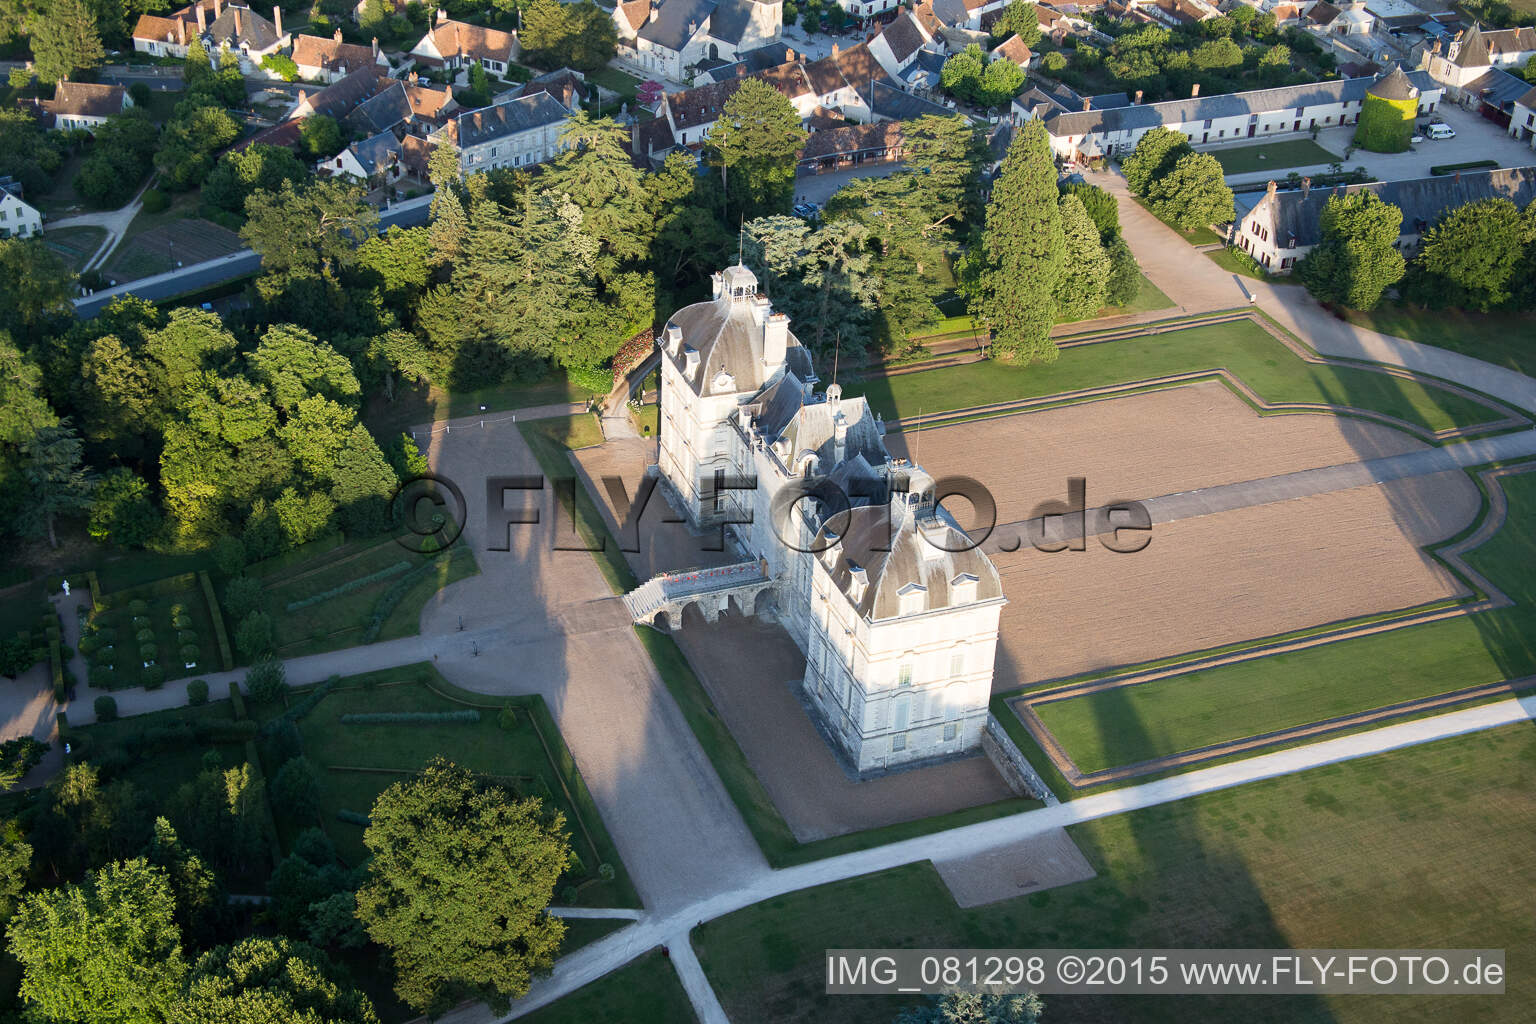 Drone recording of Castle Cheverny - Chateau de Cheverny in Cheverny in Centre-Val de Loire, France